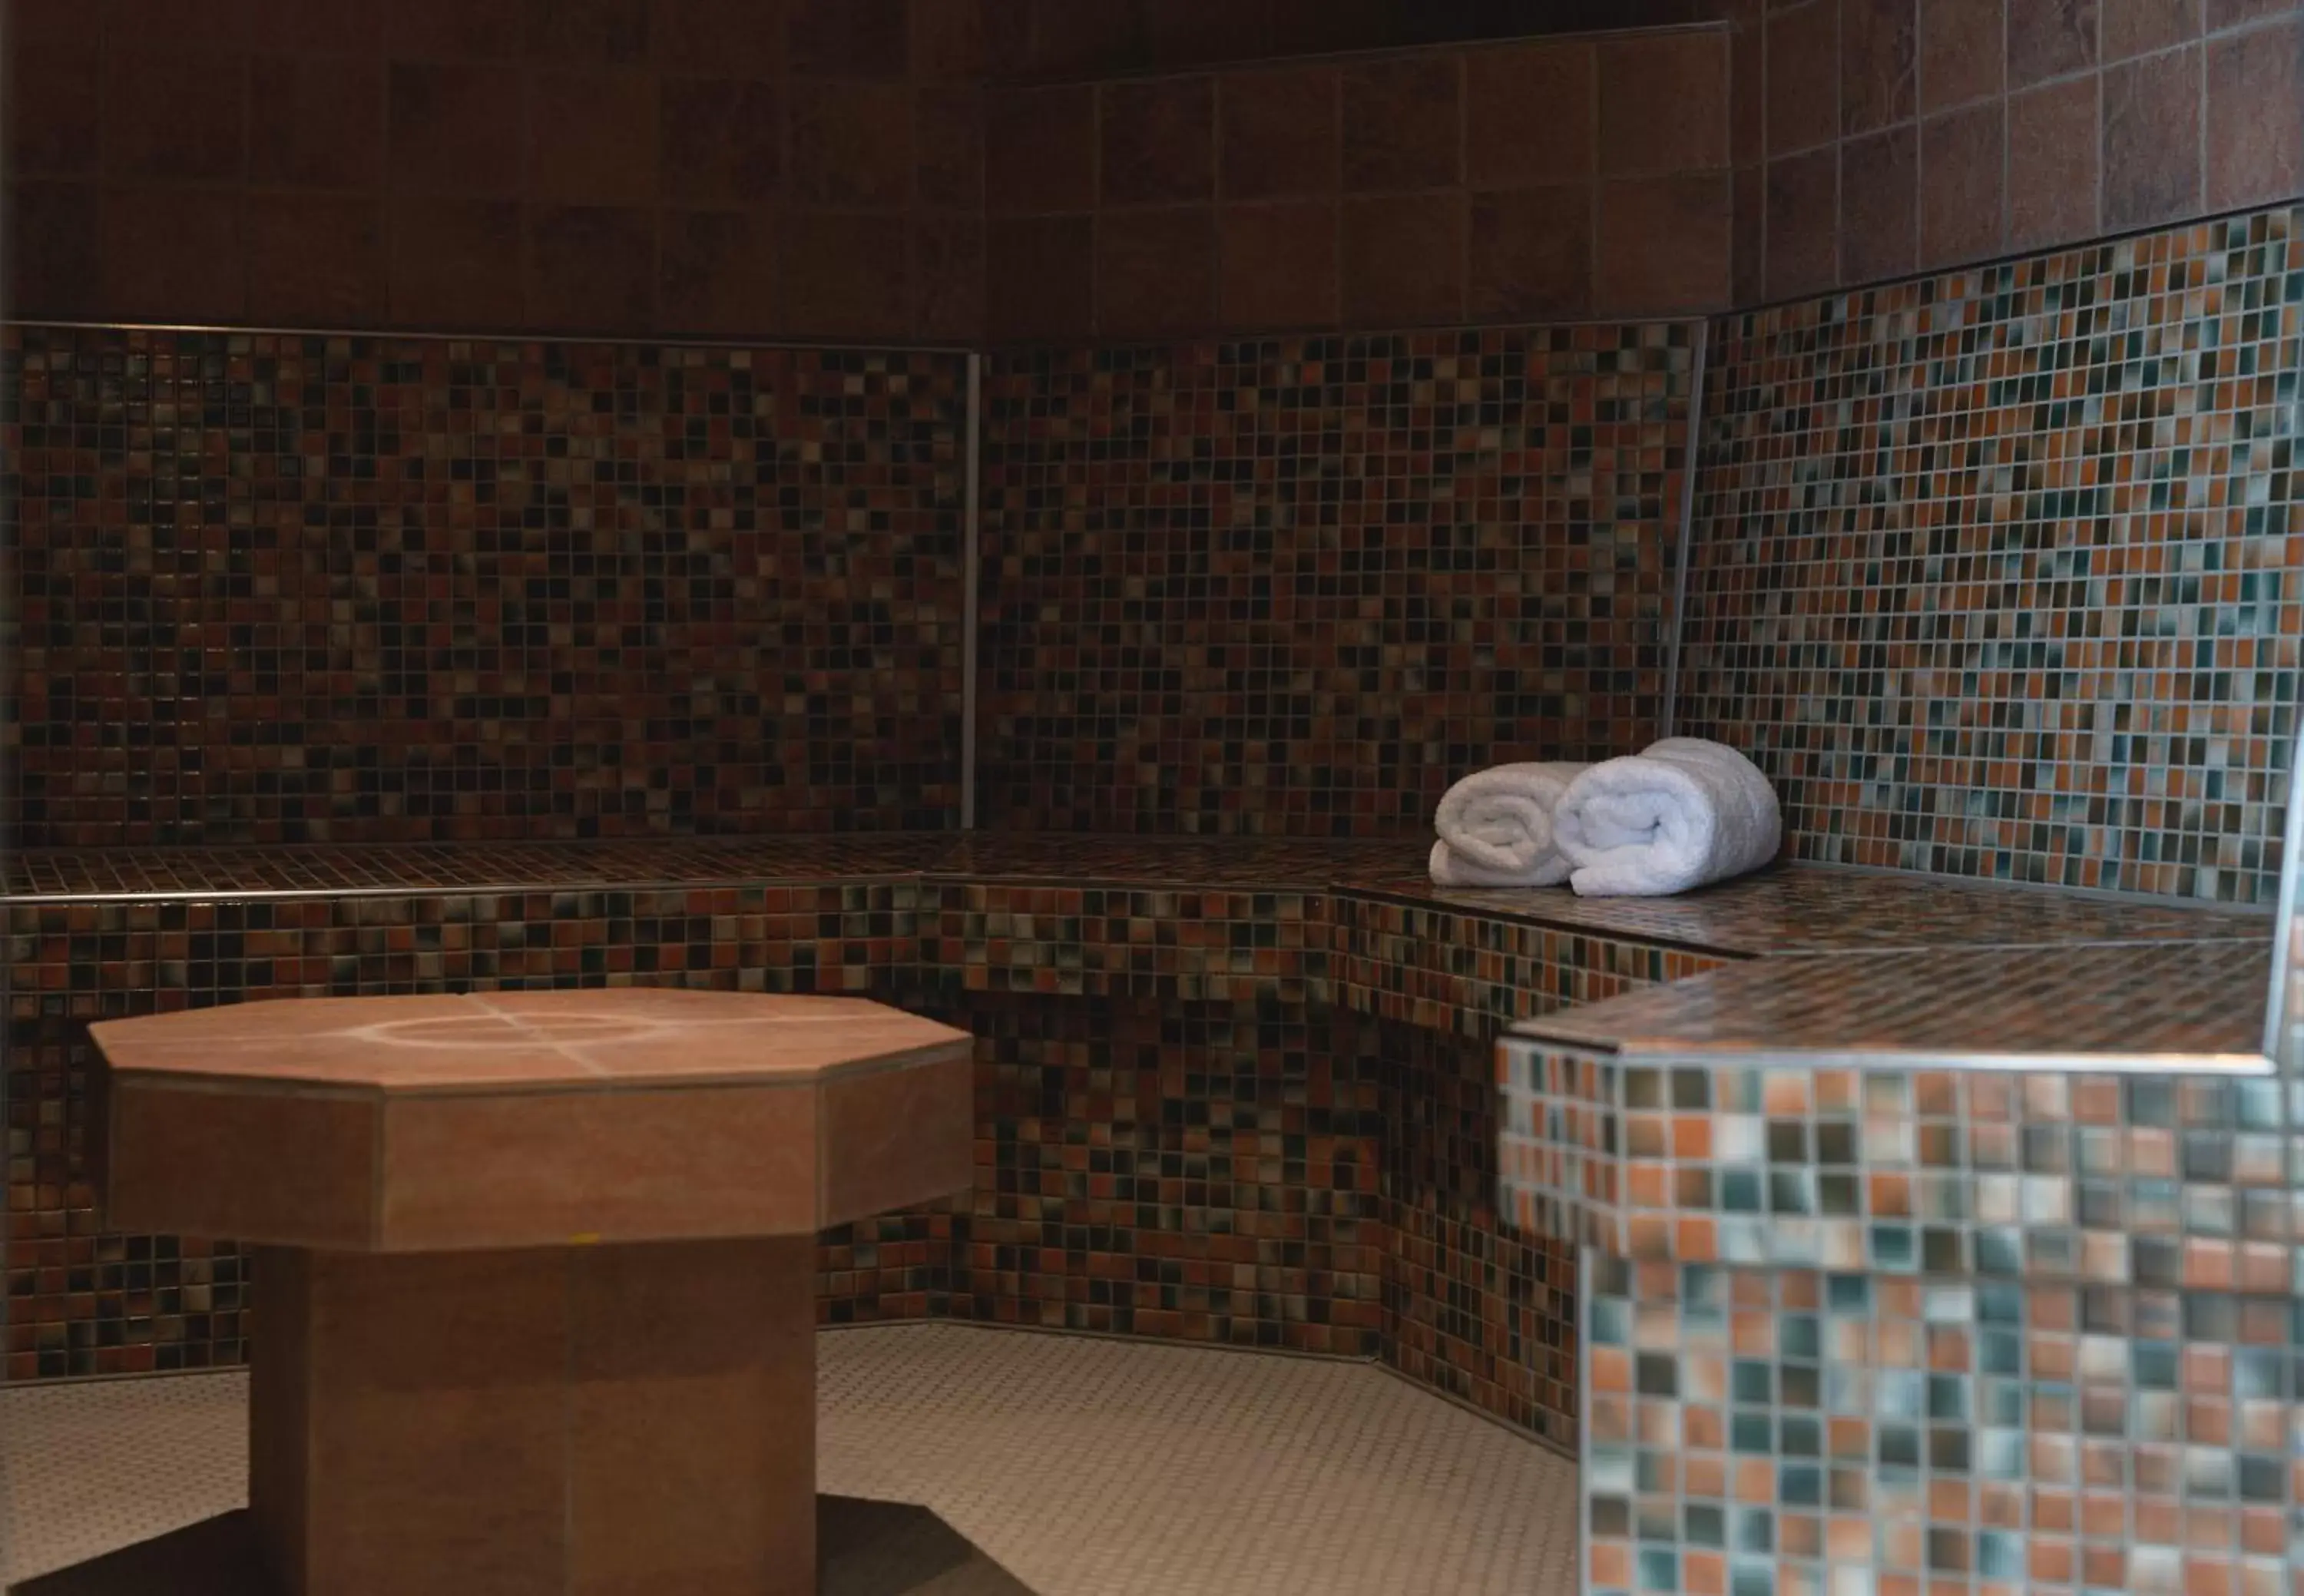 Spa and wellness centre/facilities, Bathroom in Hotel VierJahreszeiten am Seilersee